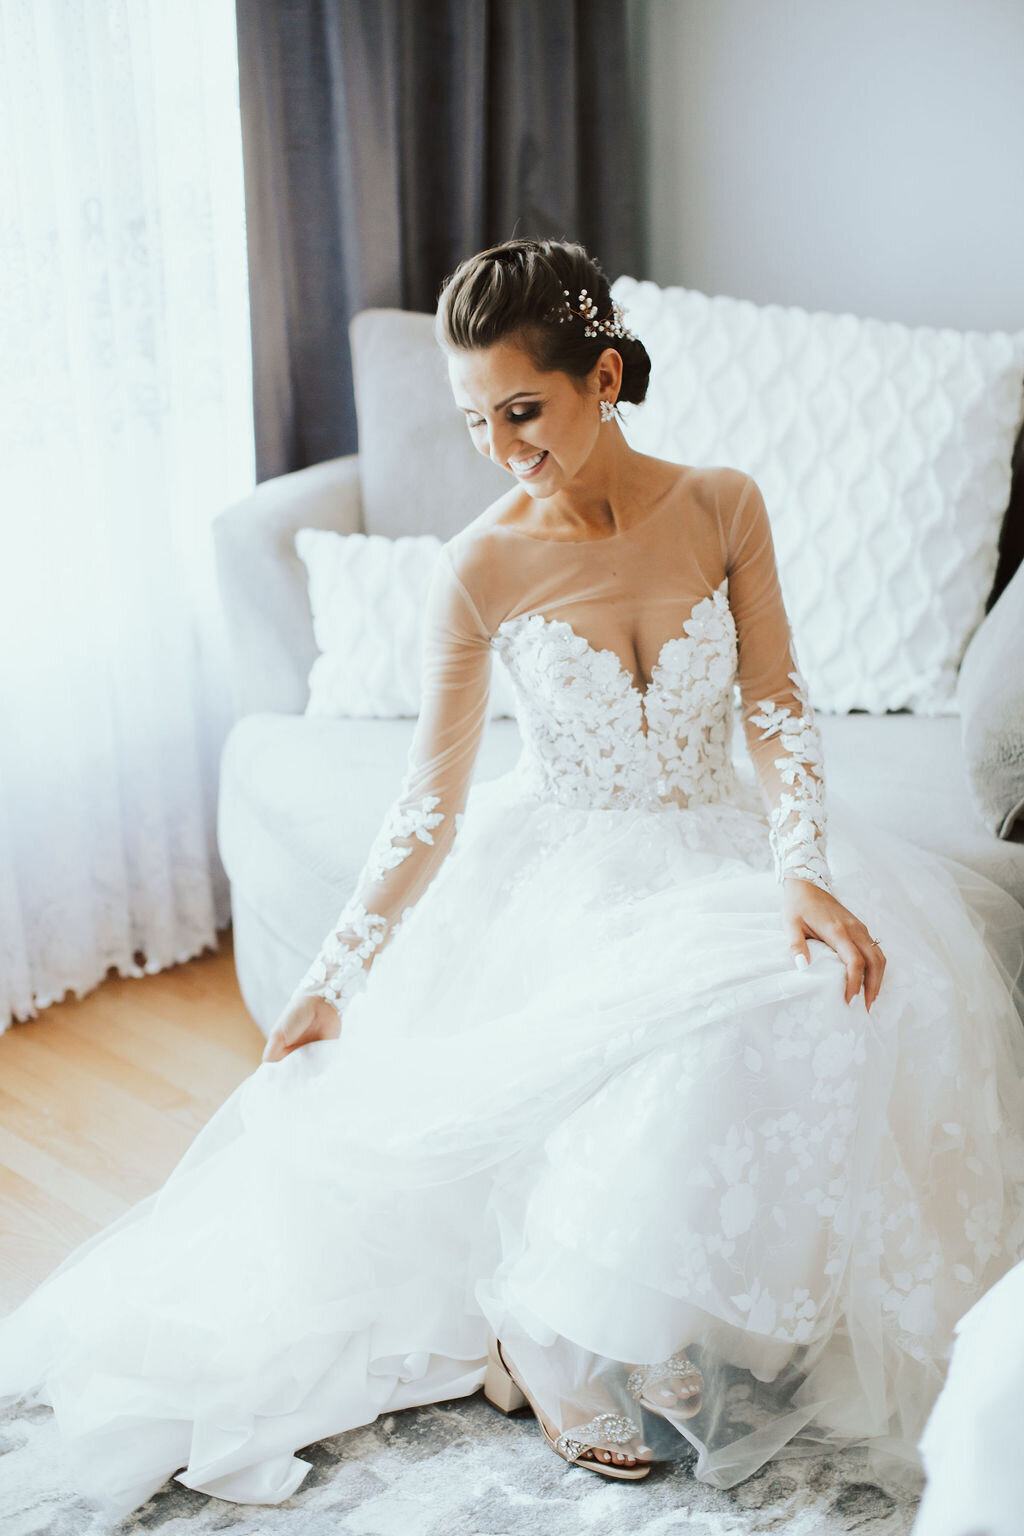 Chicago wedding photographer, bozena voytko, luxury wedding images